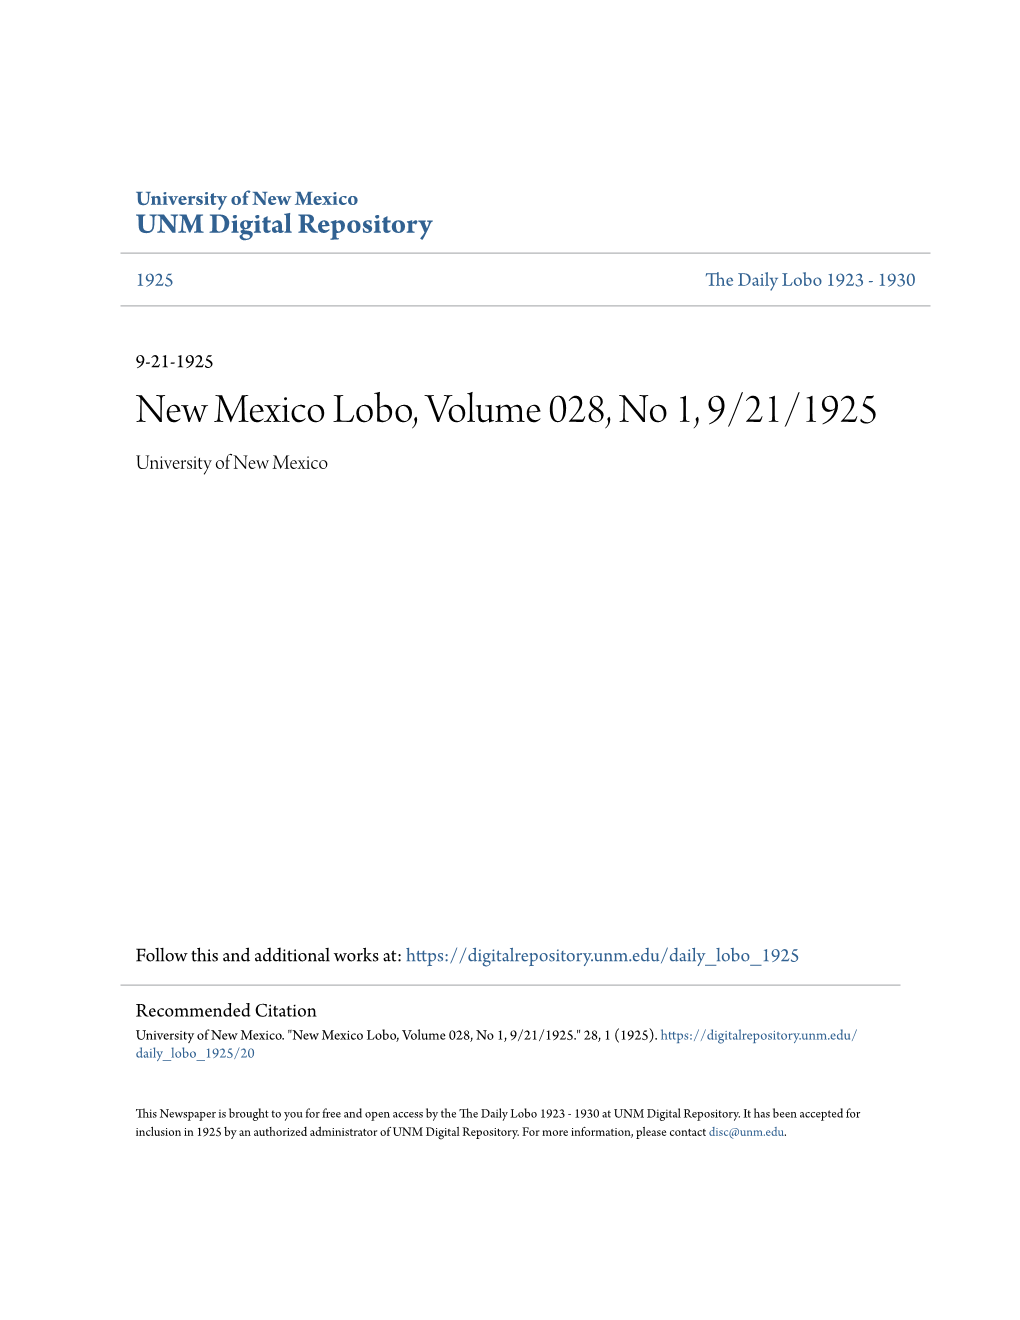 New Mexico Lobo, Volume 028, No 1, 9/21/1925 University of New Mexico